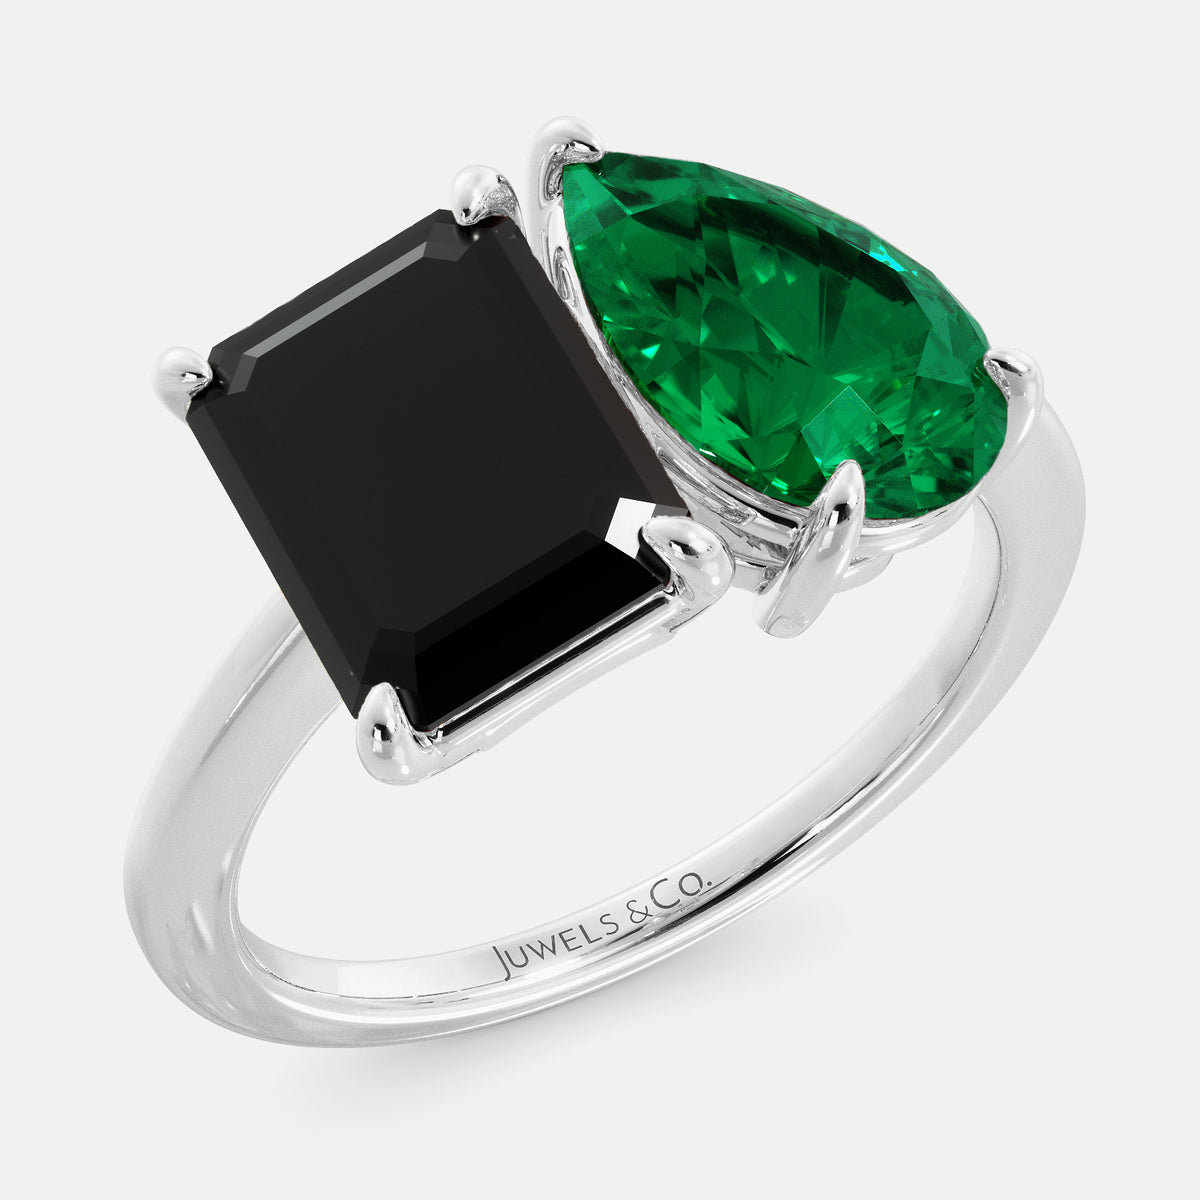 Onyx Emerald 1 2a33ed84 a31a 497a abc6